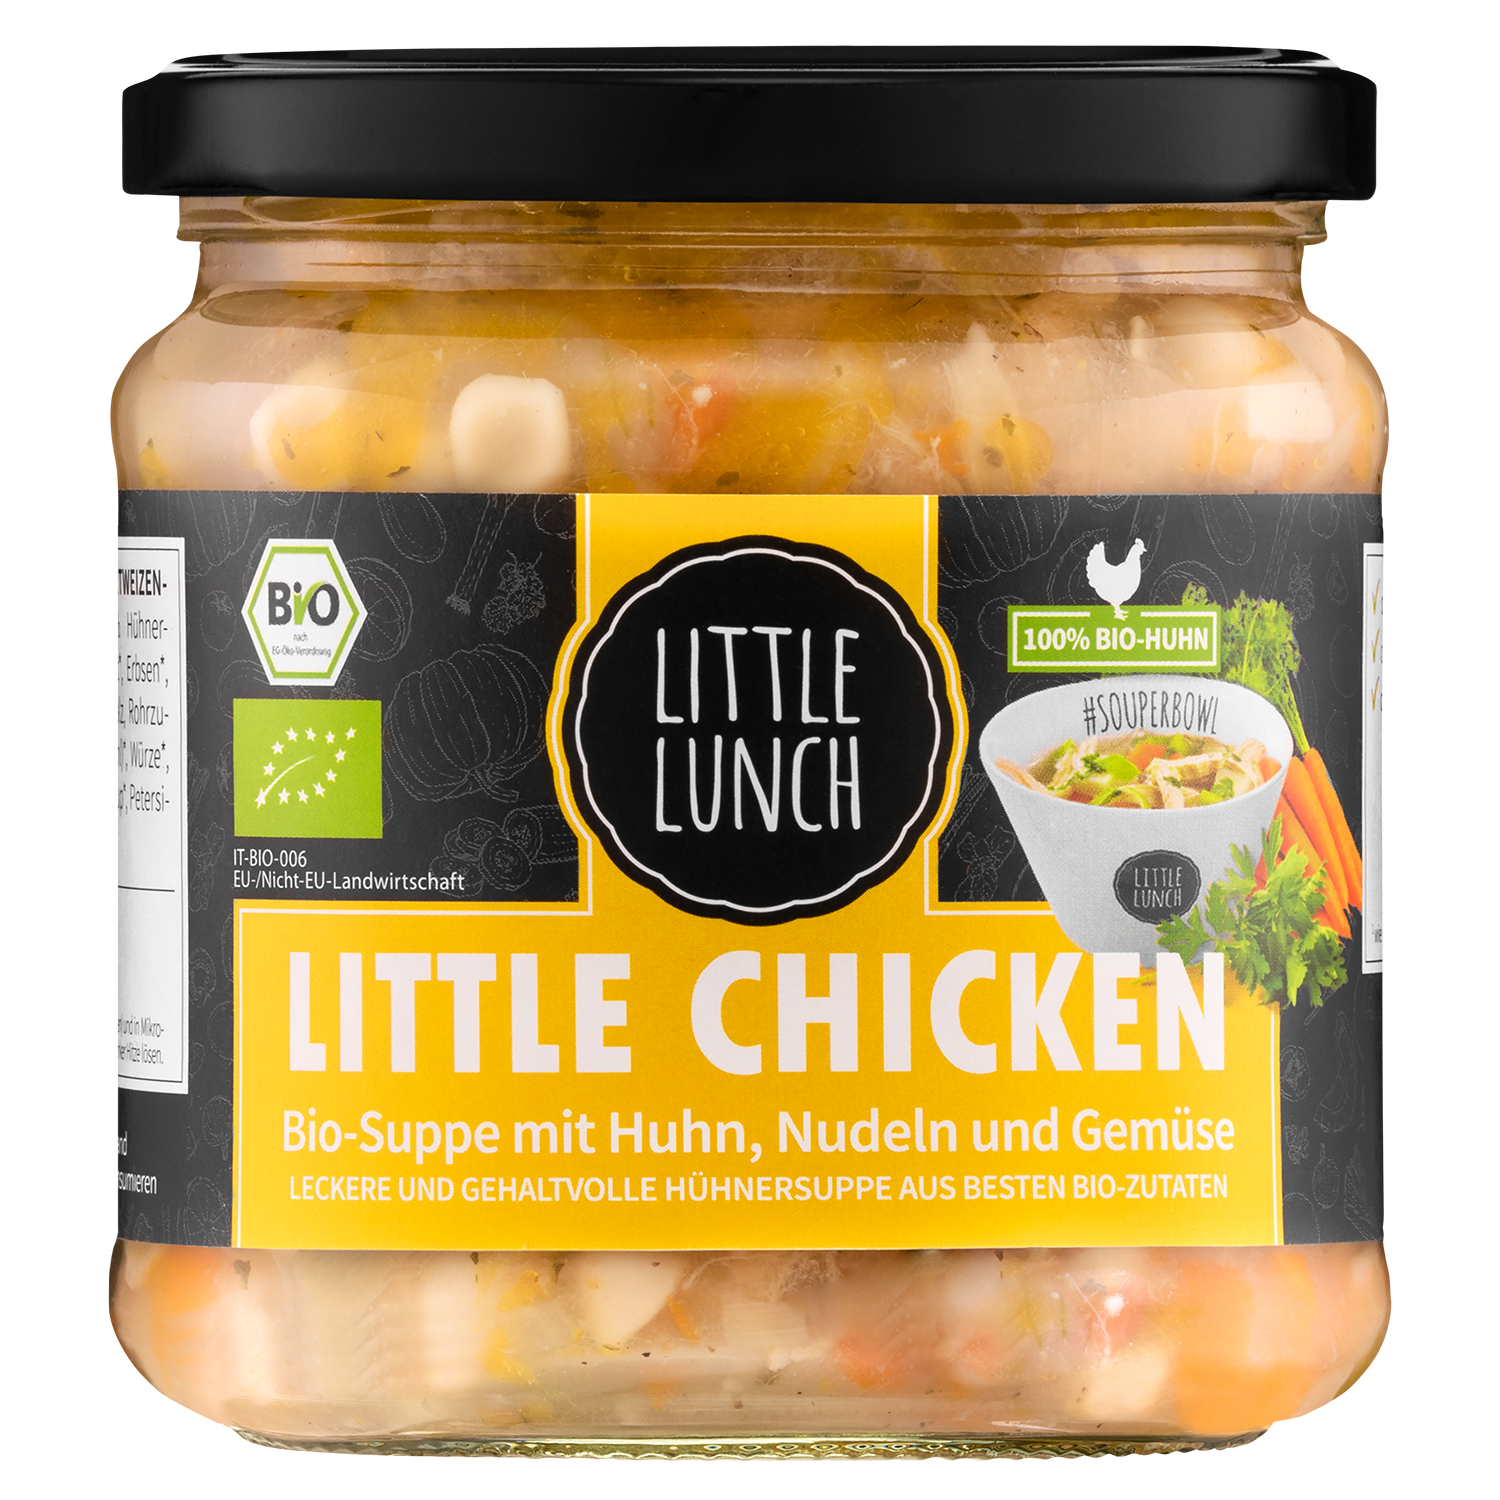 Little Lunch Bio-Suppe Little Chicken 350ml